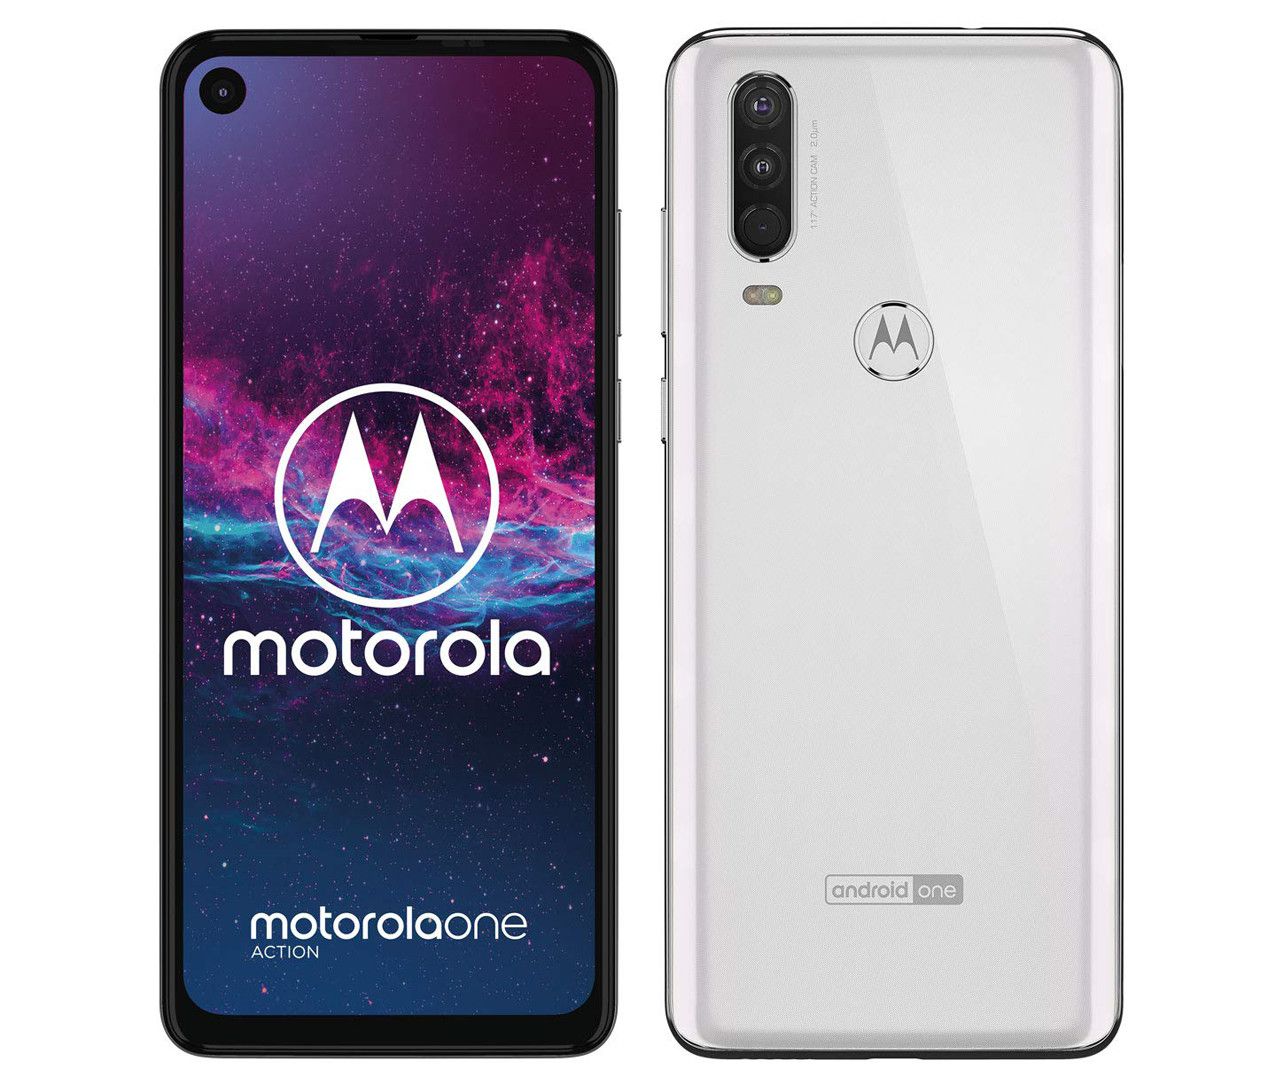 El Motorola One Action está disponible en colores Pearl white (blanco) y Denim (azul grisáceo